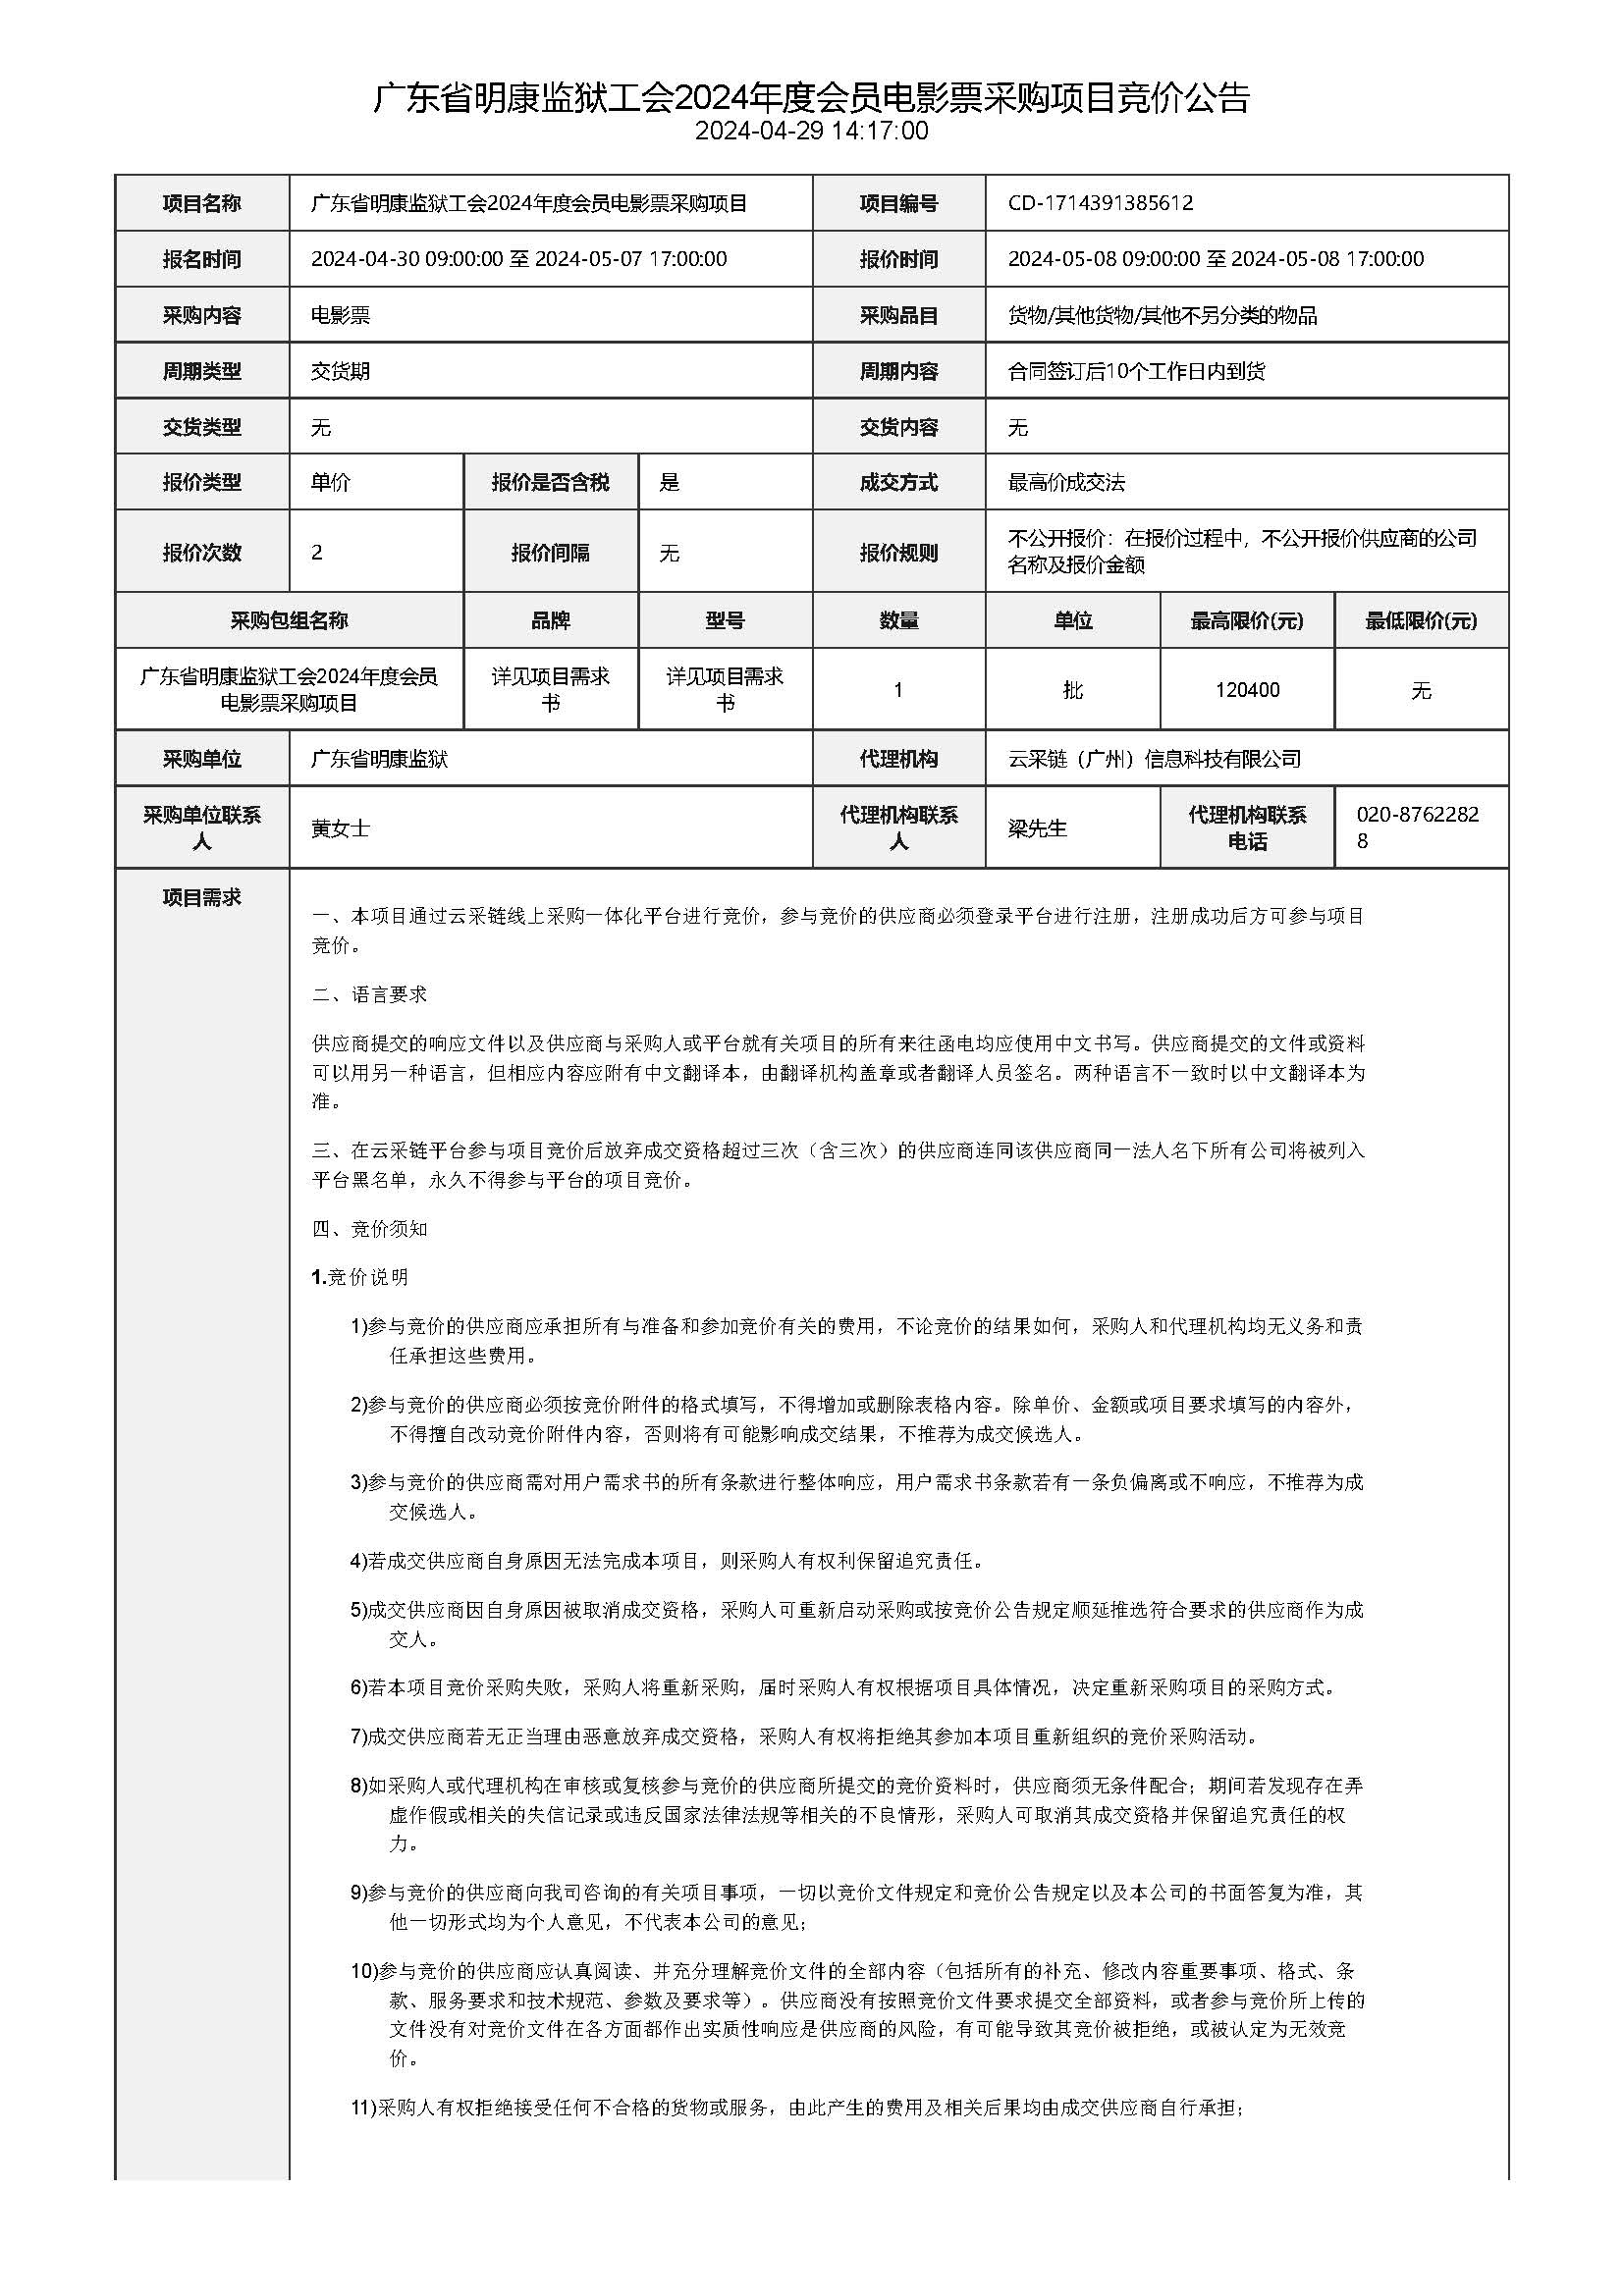 44.66广东省明康监狱工会2024年度会员电影票采购项目竞价公告_页面_1.jpg